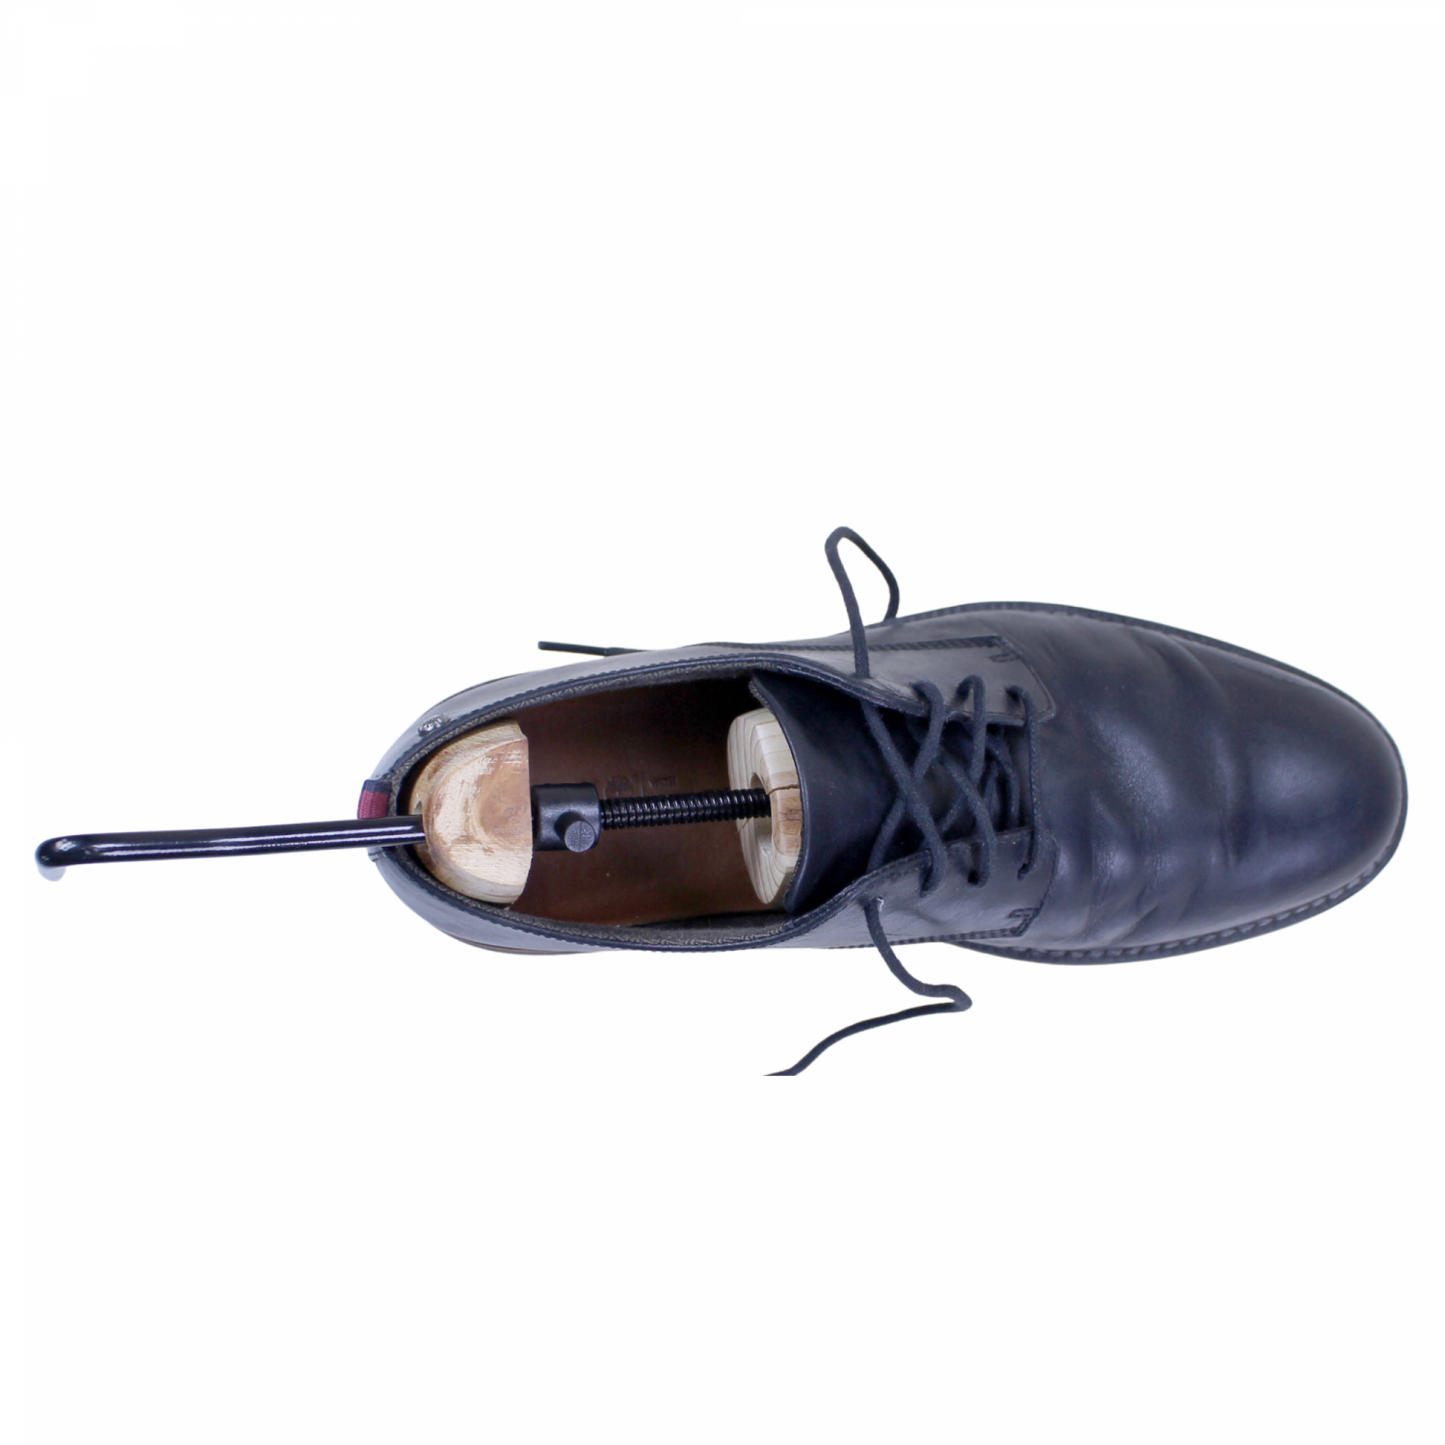 Genius Ideas GD-065500: 1-delige Schoenrek voor Dames - Schoenen Uitrekken en Comfortabel Dragen